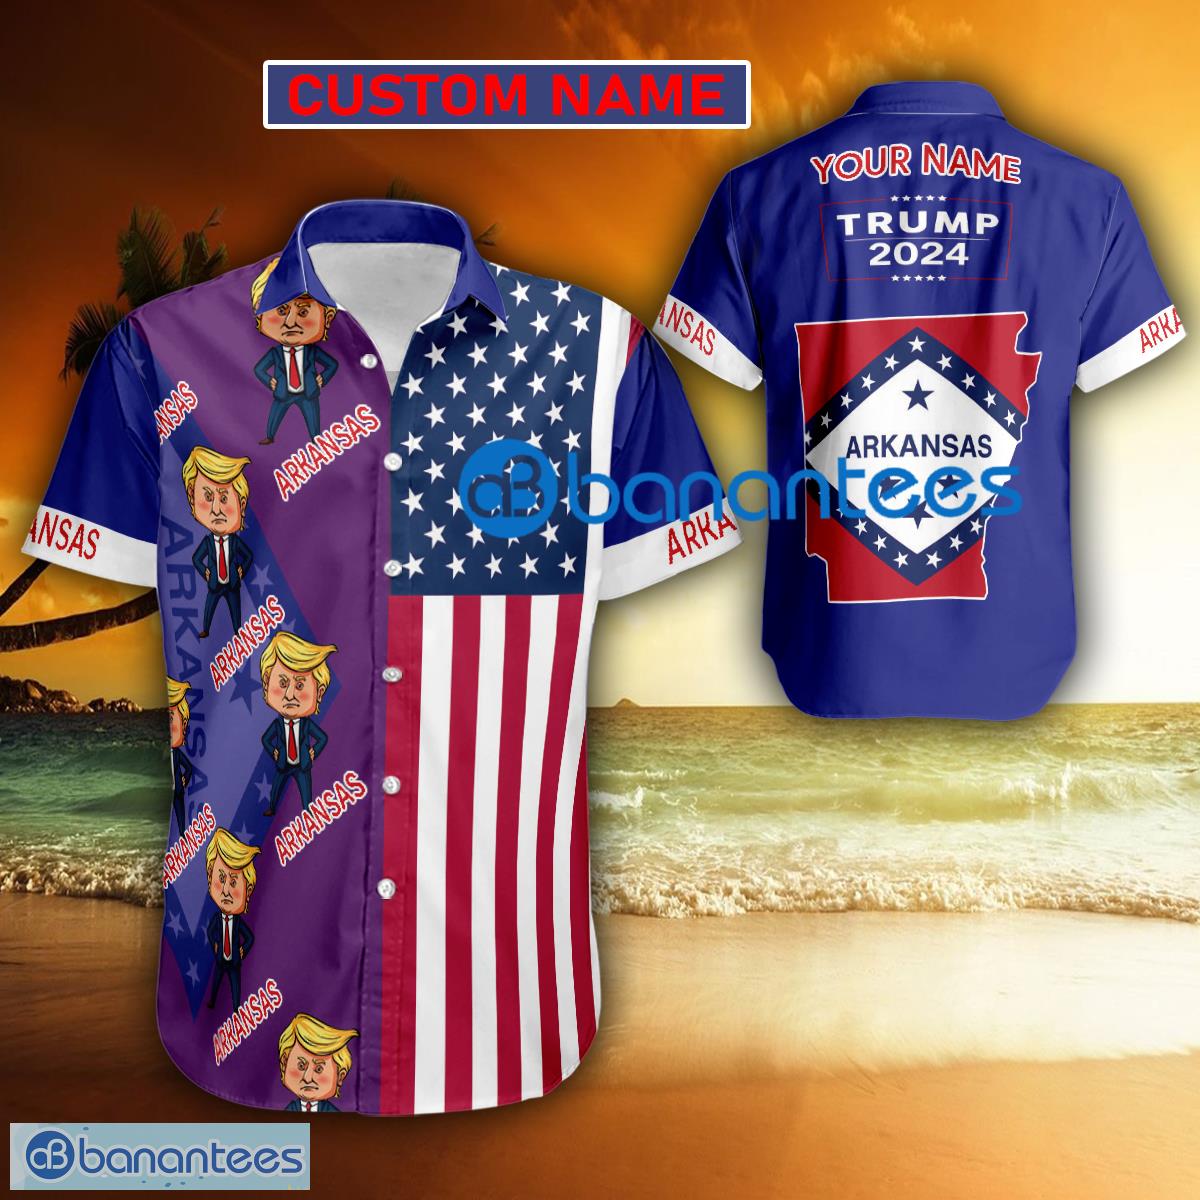 Trump 2024 Weary ARKANSAS USA Flag Funny Hawaiian Shirt Gift Fans Custom Name - Trump 2024 Weary ARKANSAS USA Flag Funny Hawaiian Shirt Gift Fans Custom Name